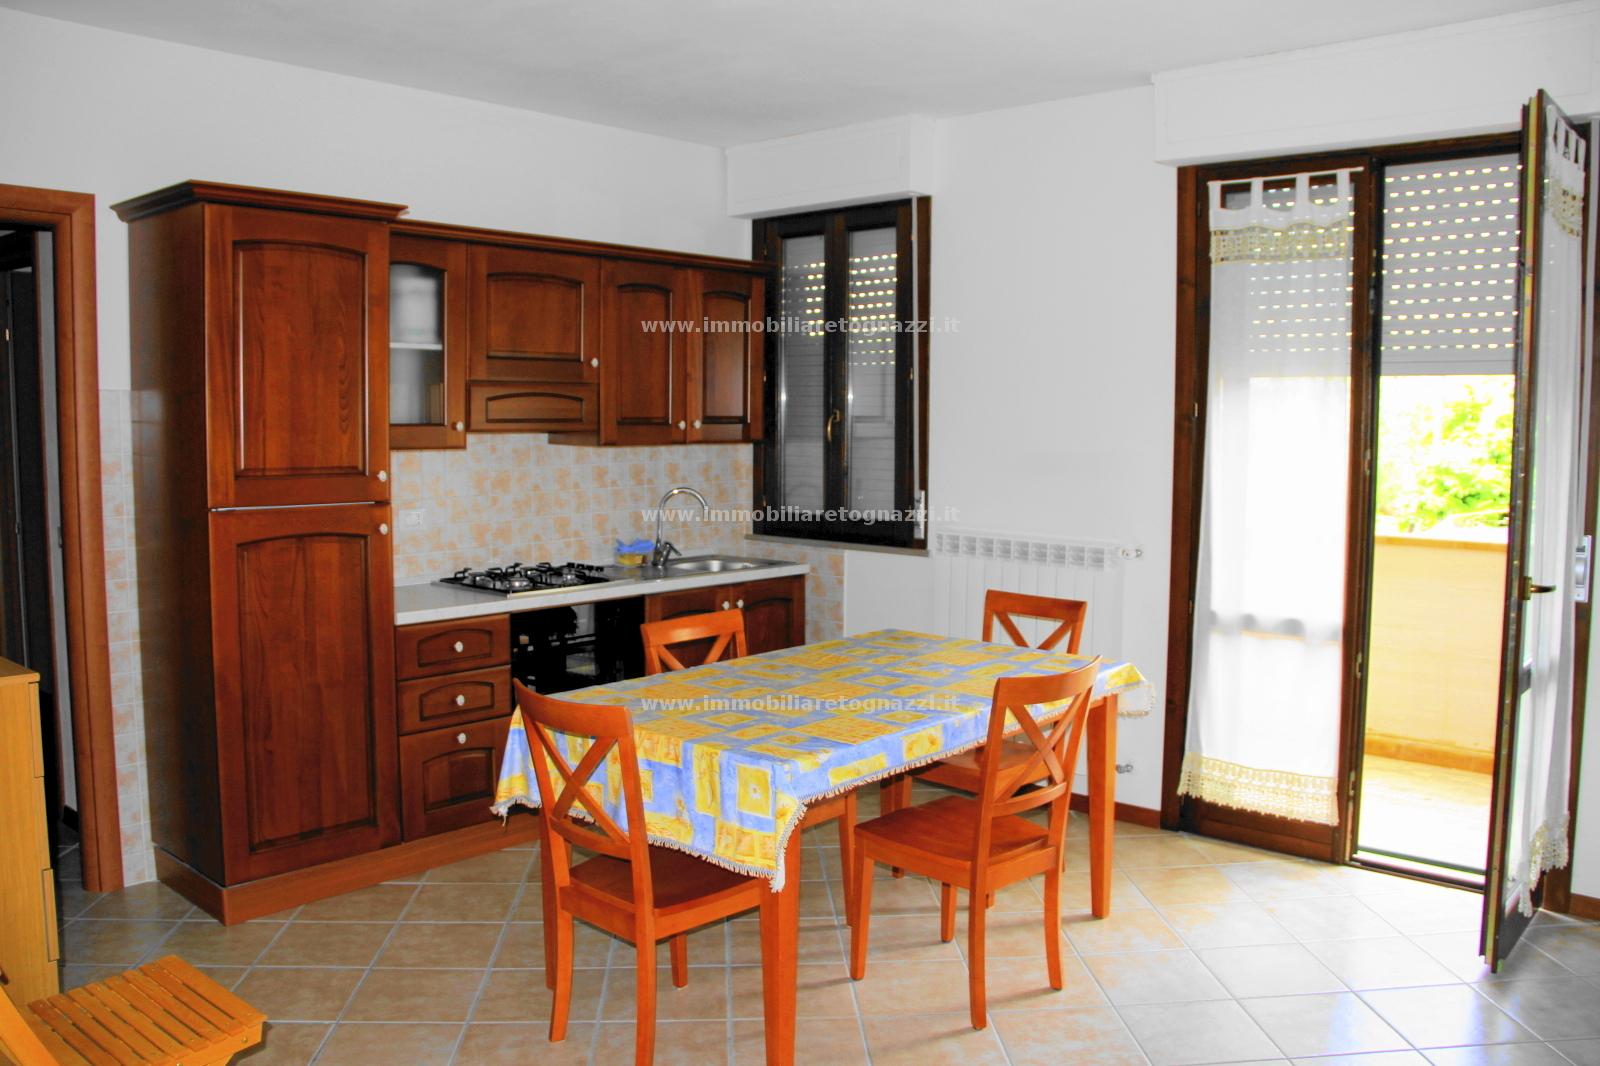 Appartamento in vendita a Montaione, 2 locali, prezzo € 89.000 | PortaleAgenzieImmobiliari.it